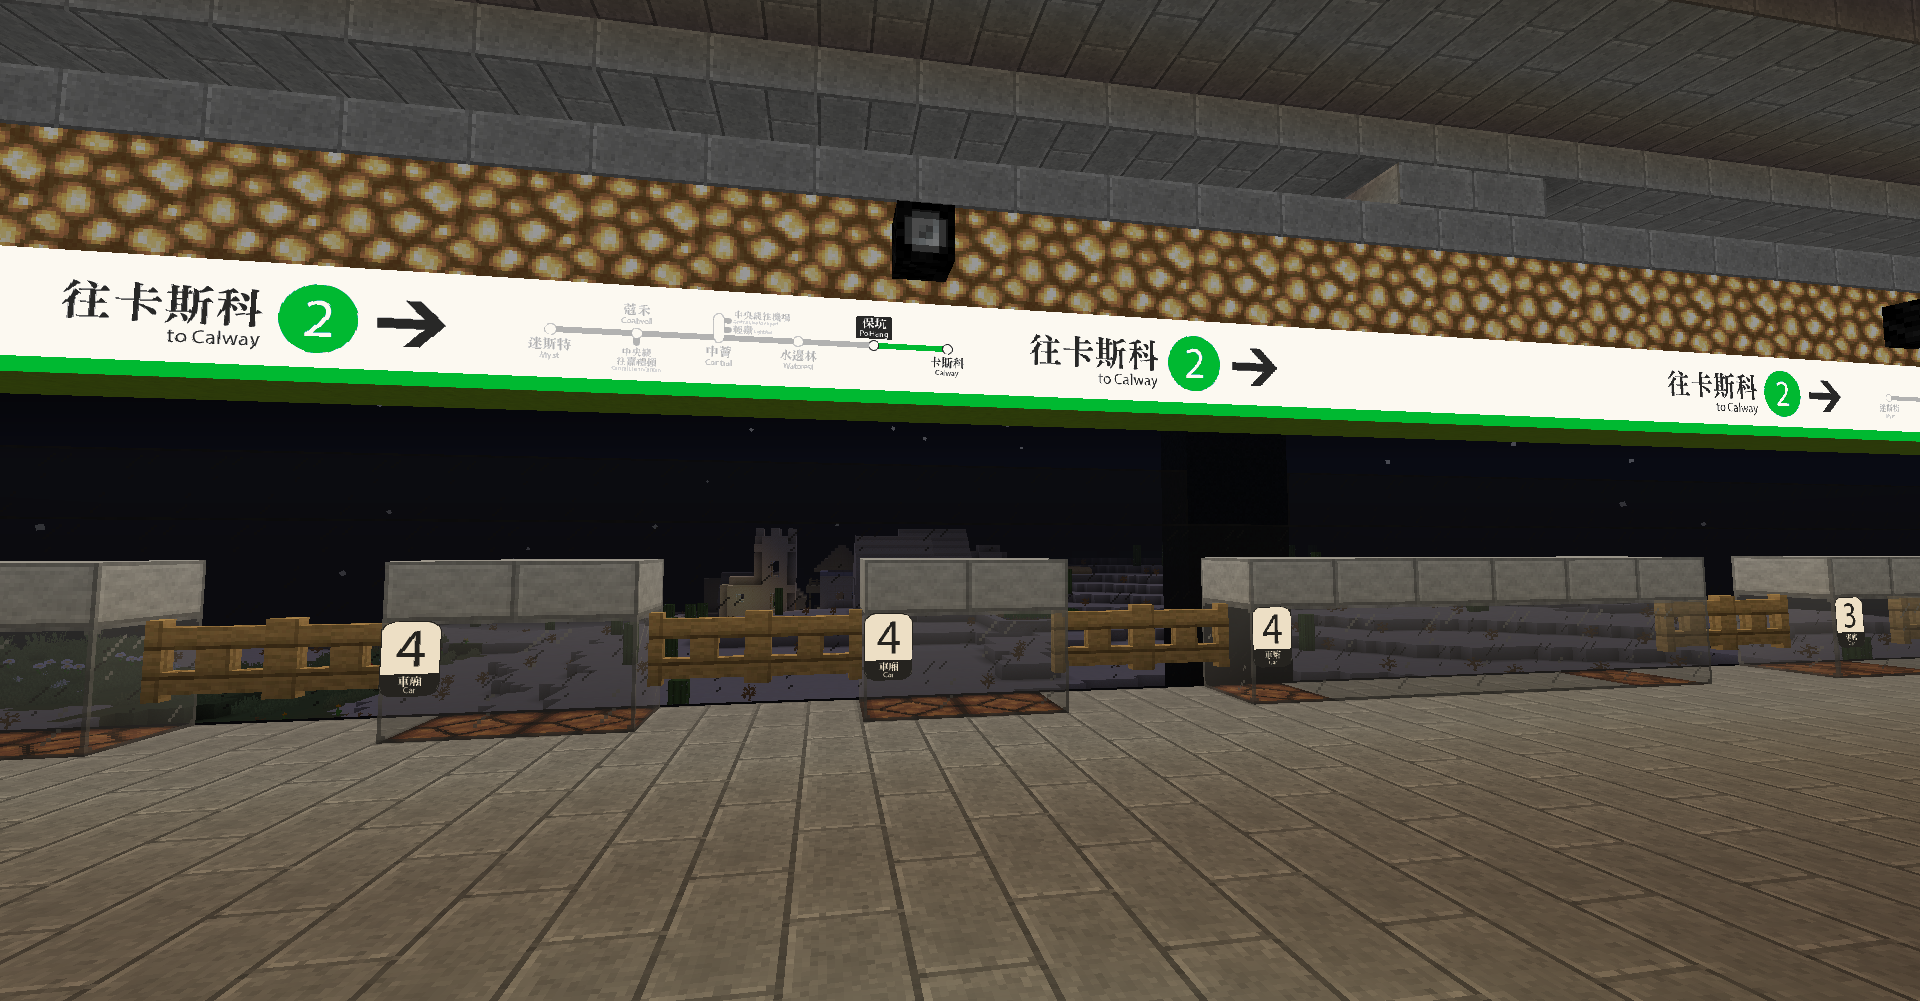 SCR Po Hang Station Platform 2